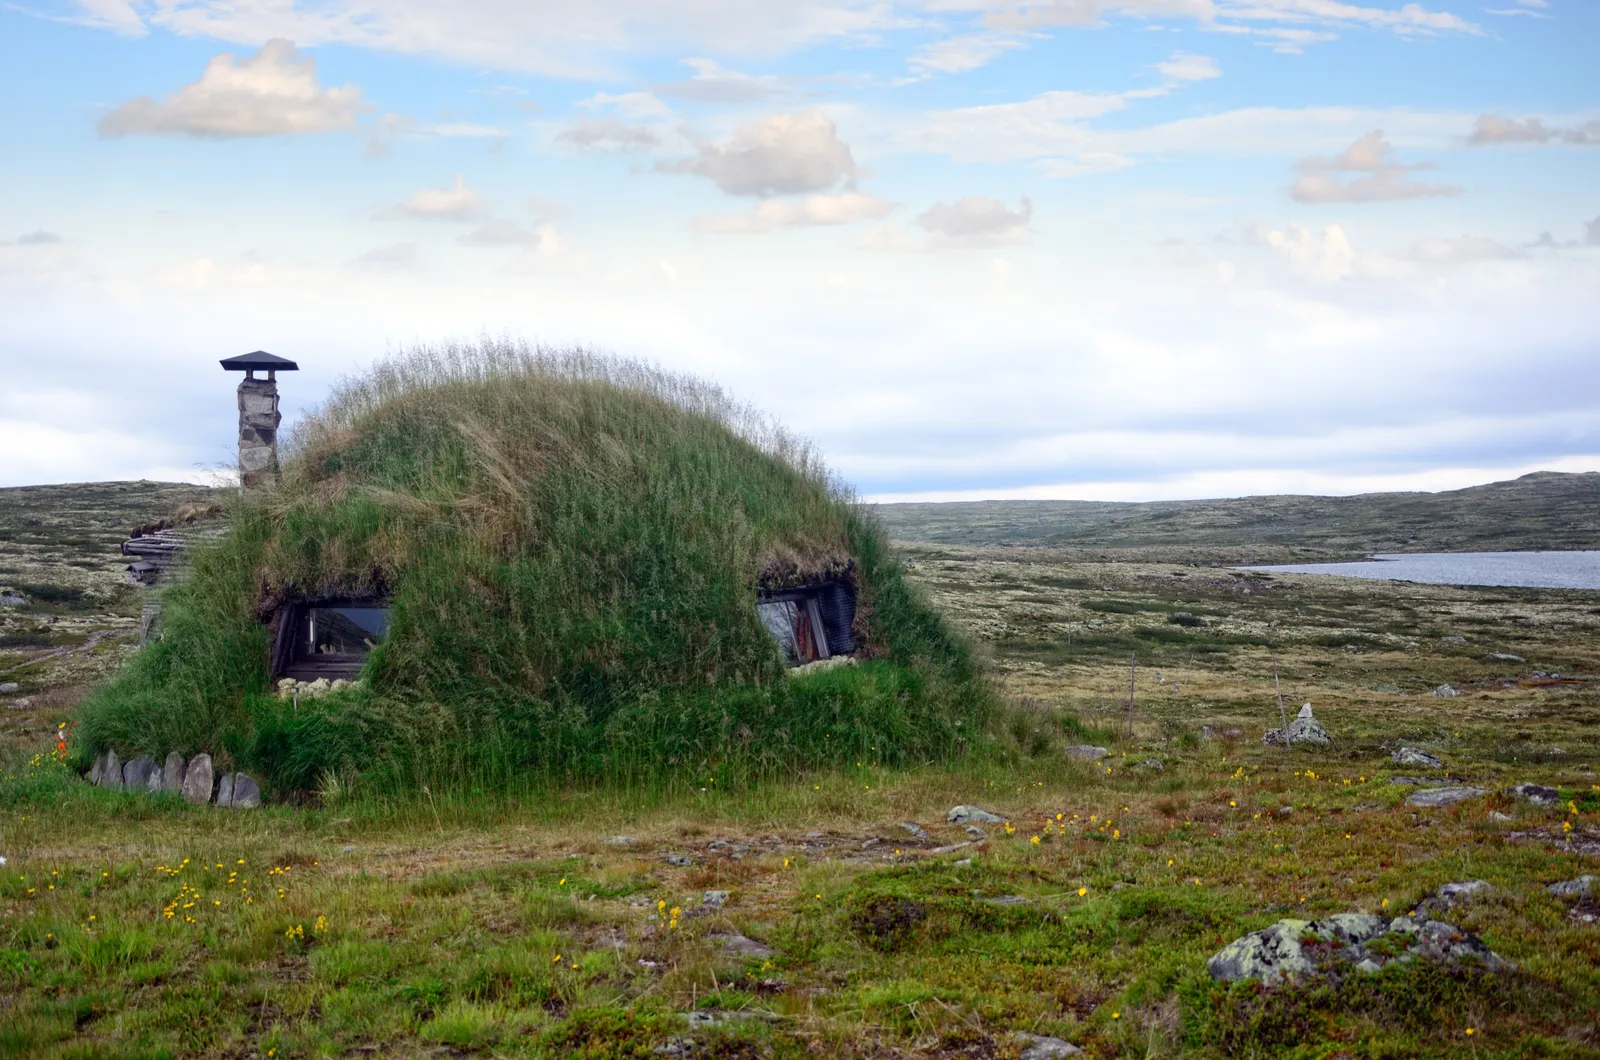 Túp lều cỏ (Na Uy)Trong thế giới ngày càng quan tâm đến tính bền vững của chúng ta, không có gì lạ khi nhìn thấy những mái nhà xanh hoặc sống động trong các ngôi nhà. Điều đó nói rằng, không phải hàng ngày bạn nhìn thấy một ngôi nhà được bao phủ hoàn toàn bởi cây cối, giống như ngôi nhà này ở Na Uy. Mặc dù túp lều này nằm trong Công viên Quốc gia Hardangervidda, nhưng bạn có thể thuê một cabin tương tự ở các vùng khác của đất nước, bao gồm cả  Vilgesvarre-Blåfjell ở Harstad.